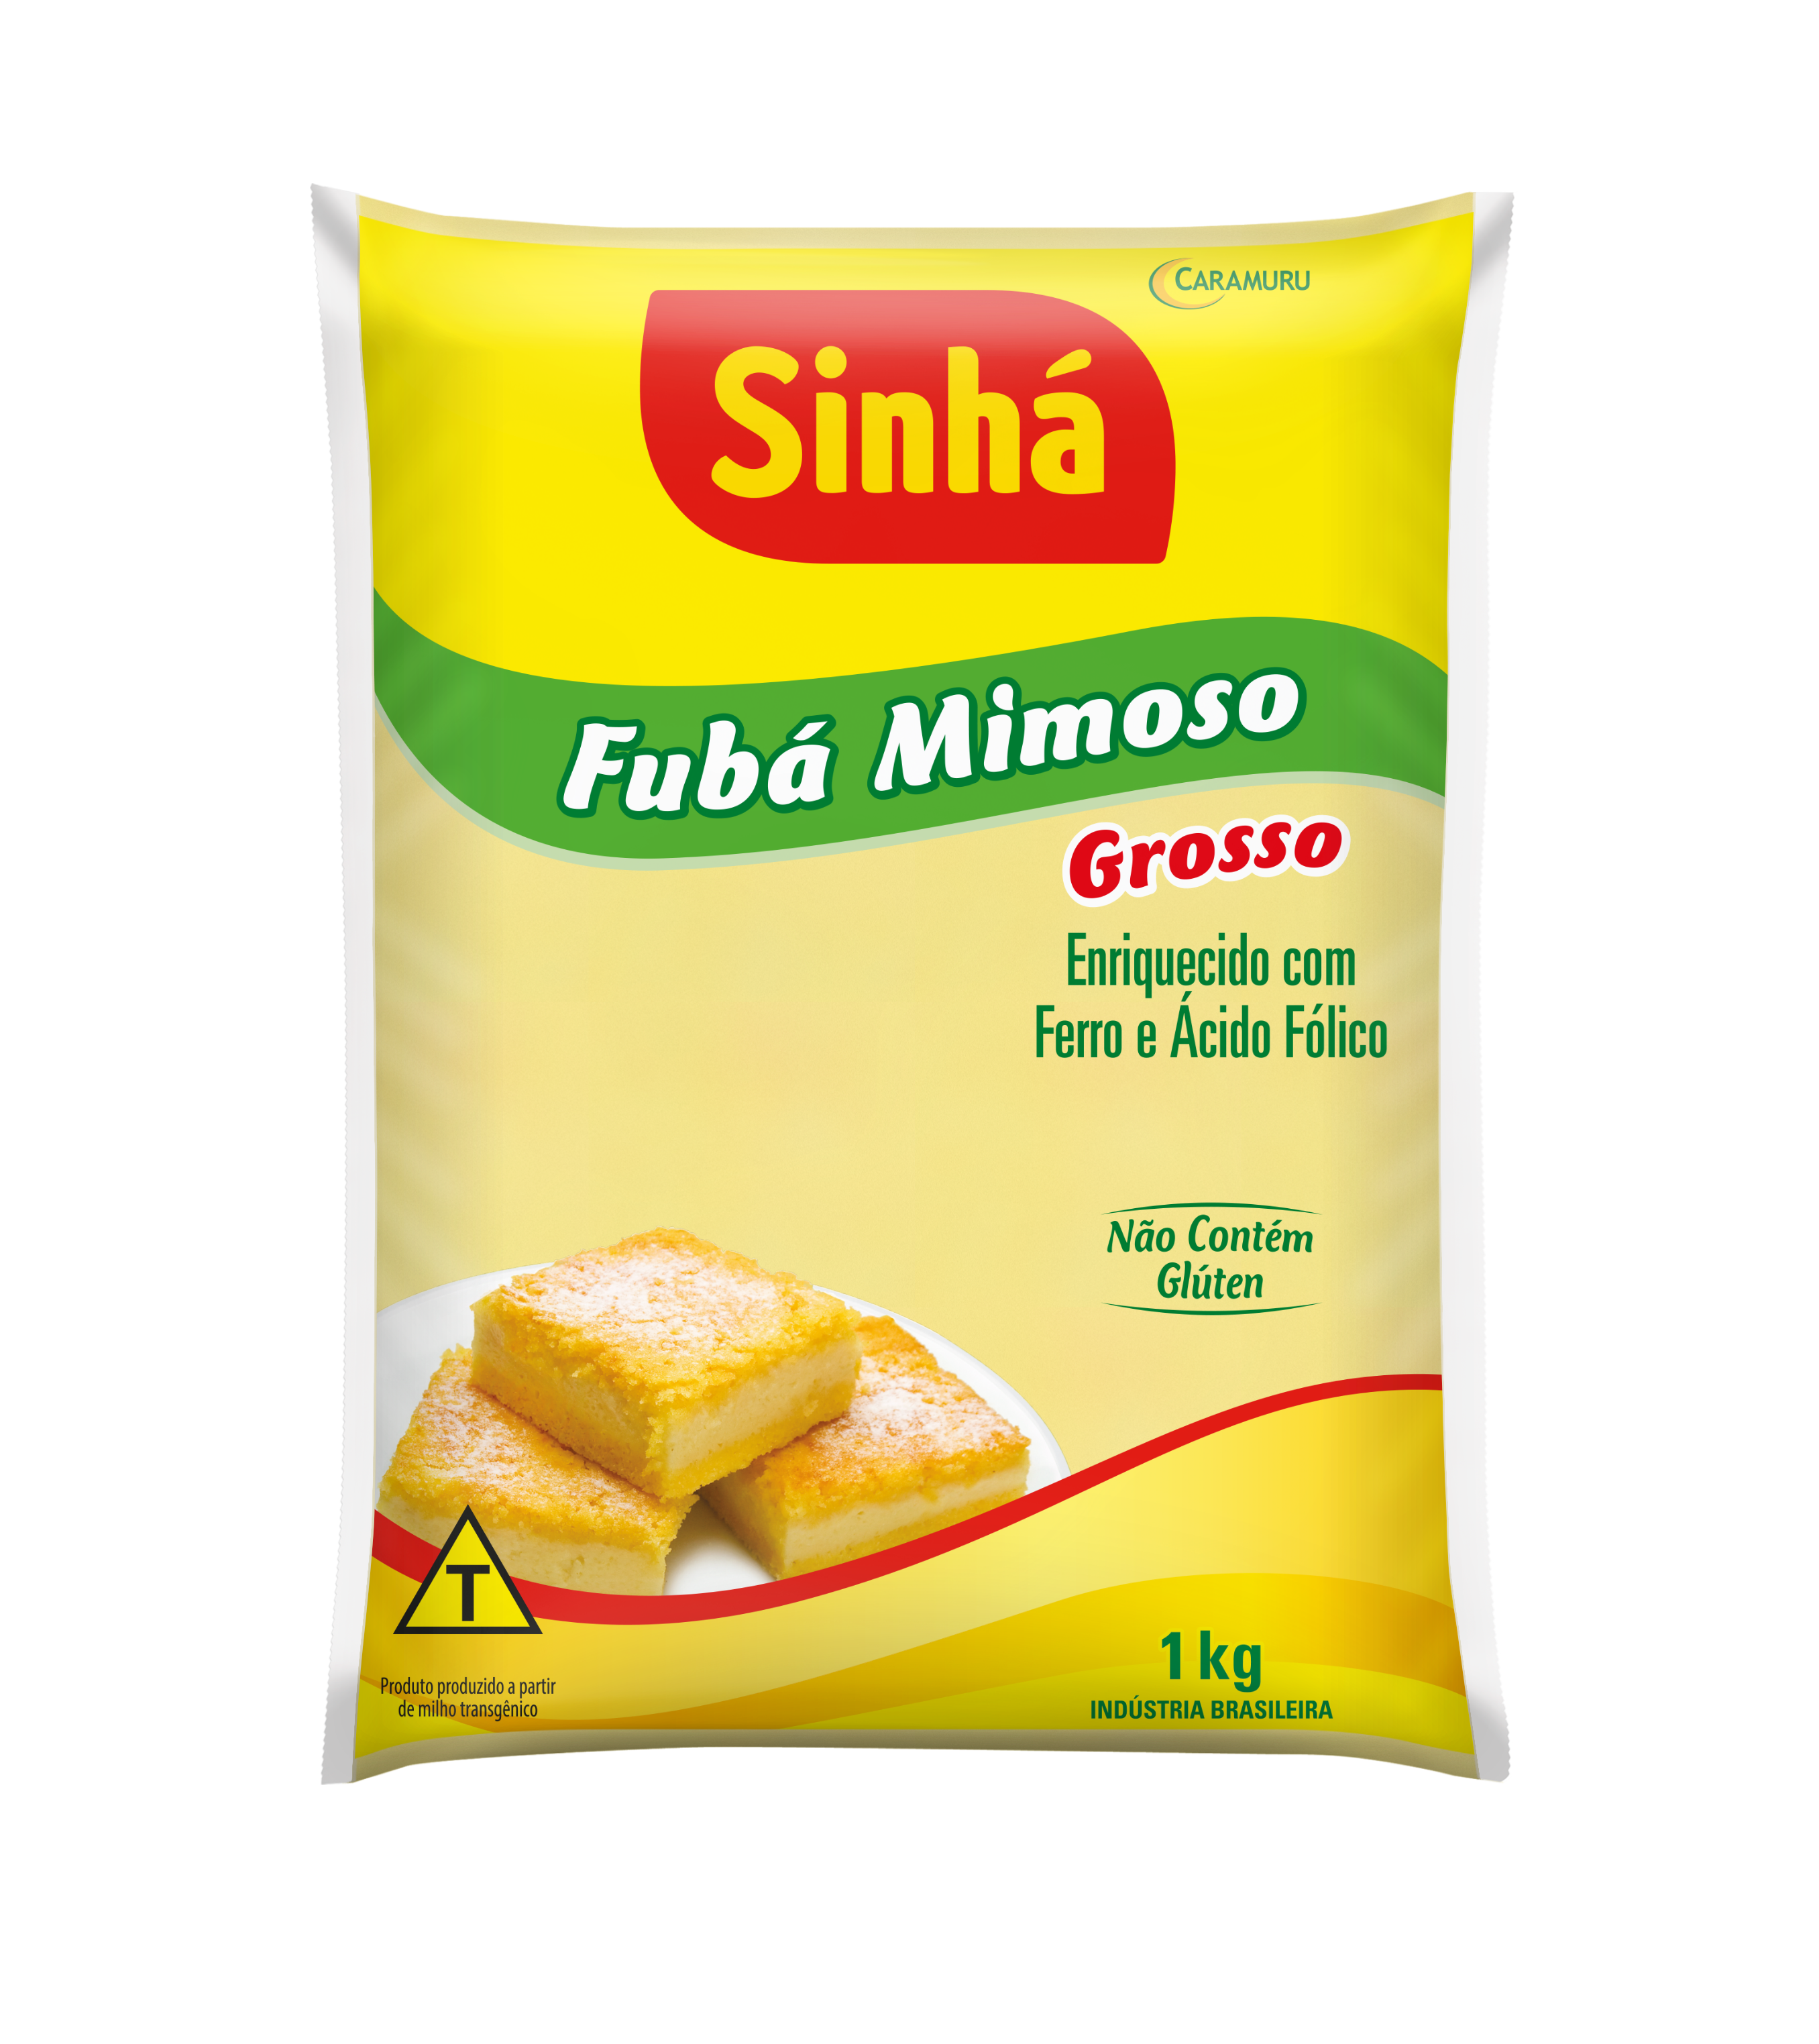 Fubá Mimoso Grosso Sinhá